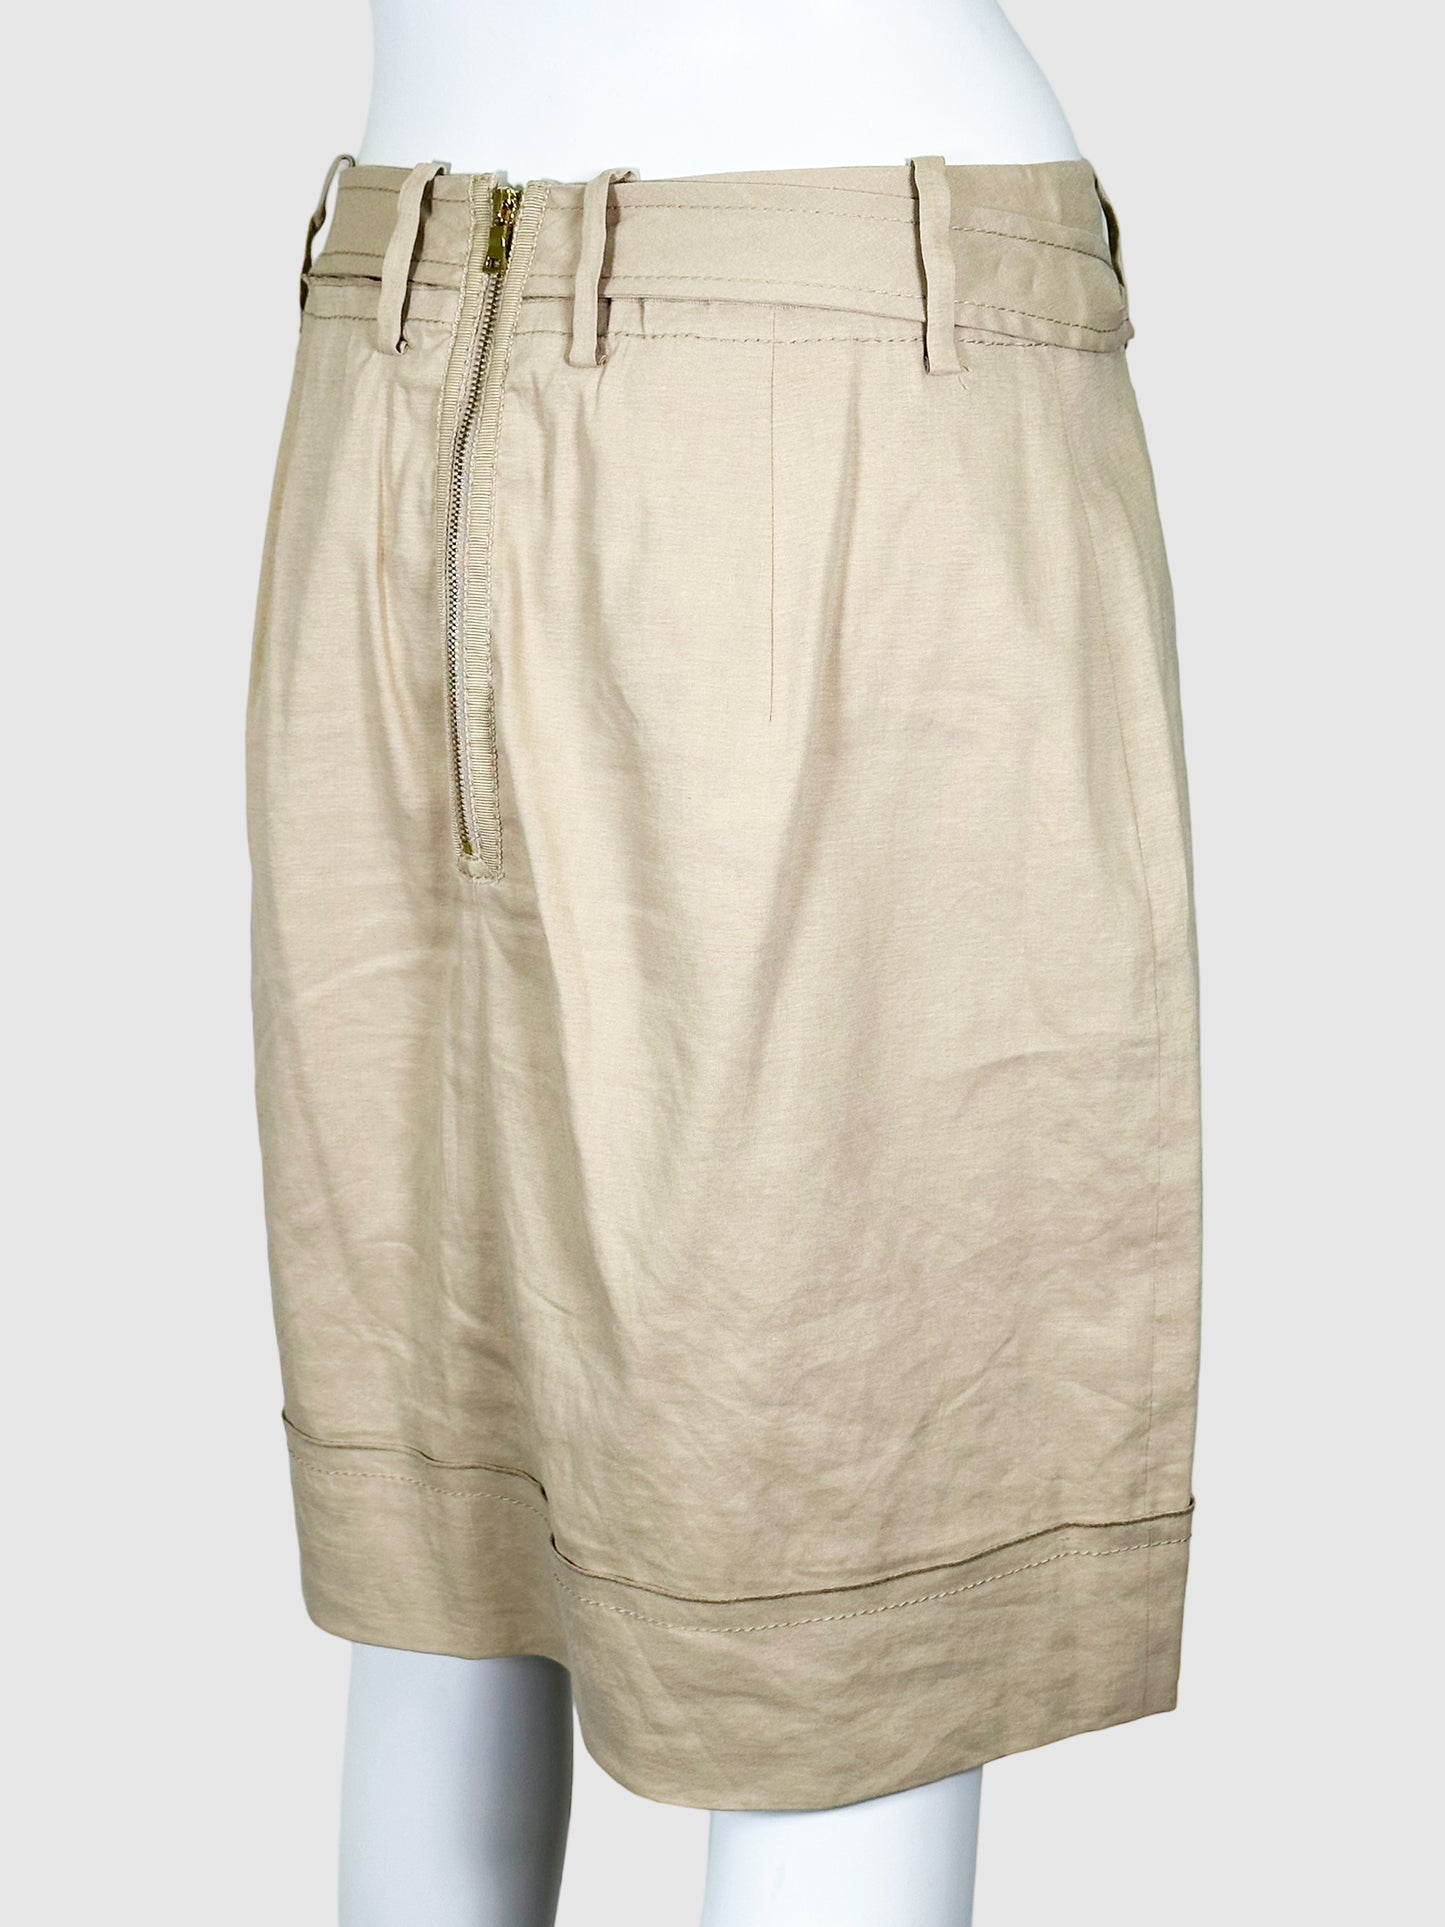 Elie Tahari Linen Skirt - Size 8